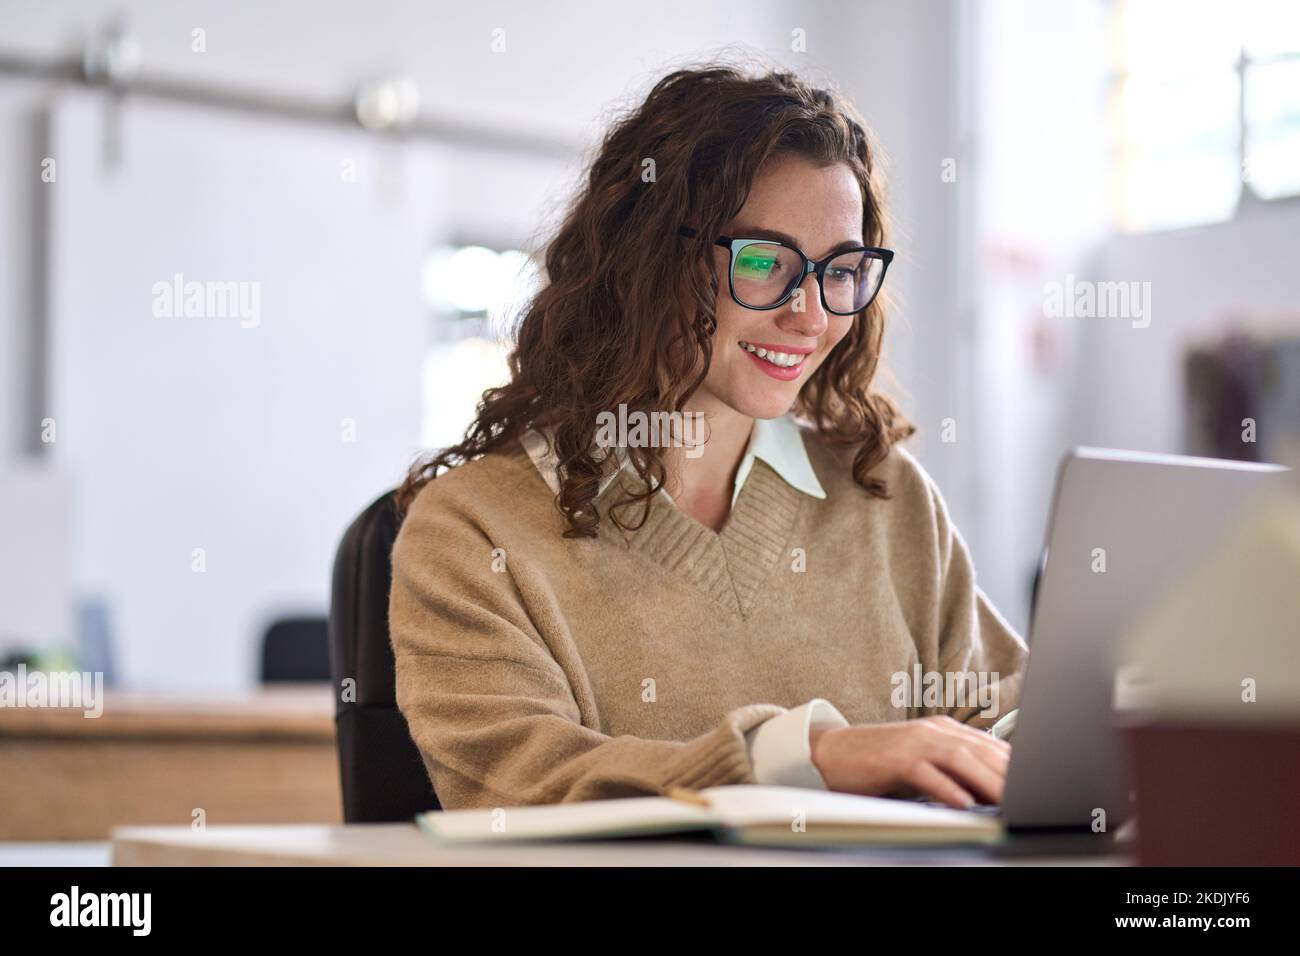 Jeune femme heureuse employée ou étudiante assis au bureau à l'aide d'un ordinateur portable. Banque D'Images